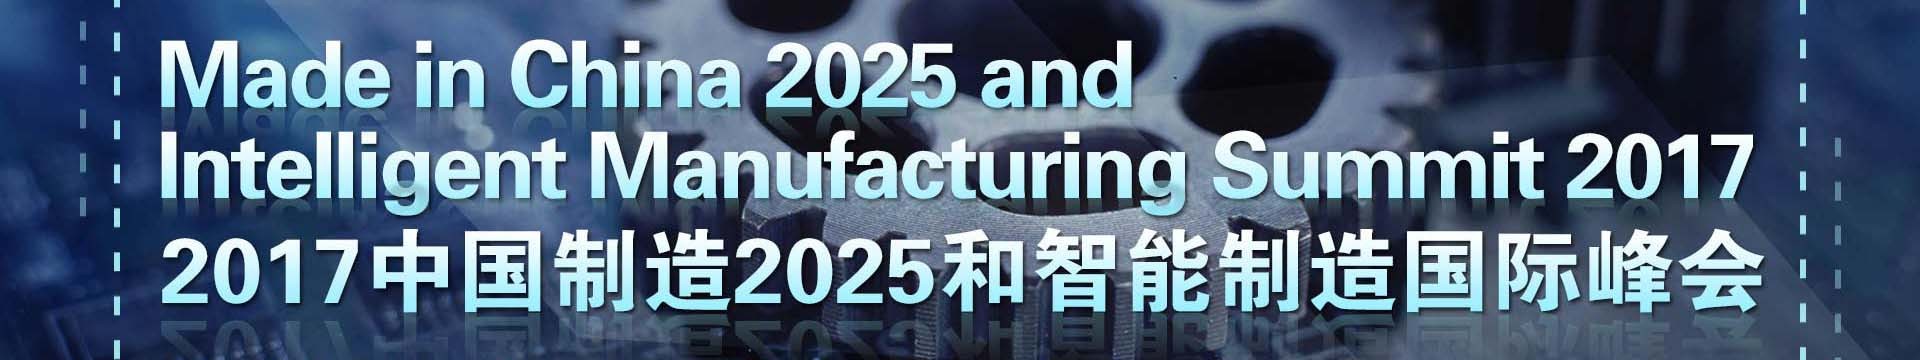 2017中国制造2025和智能制造国际峰会